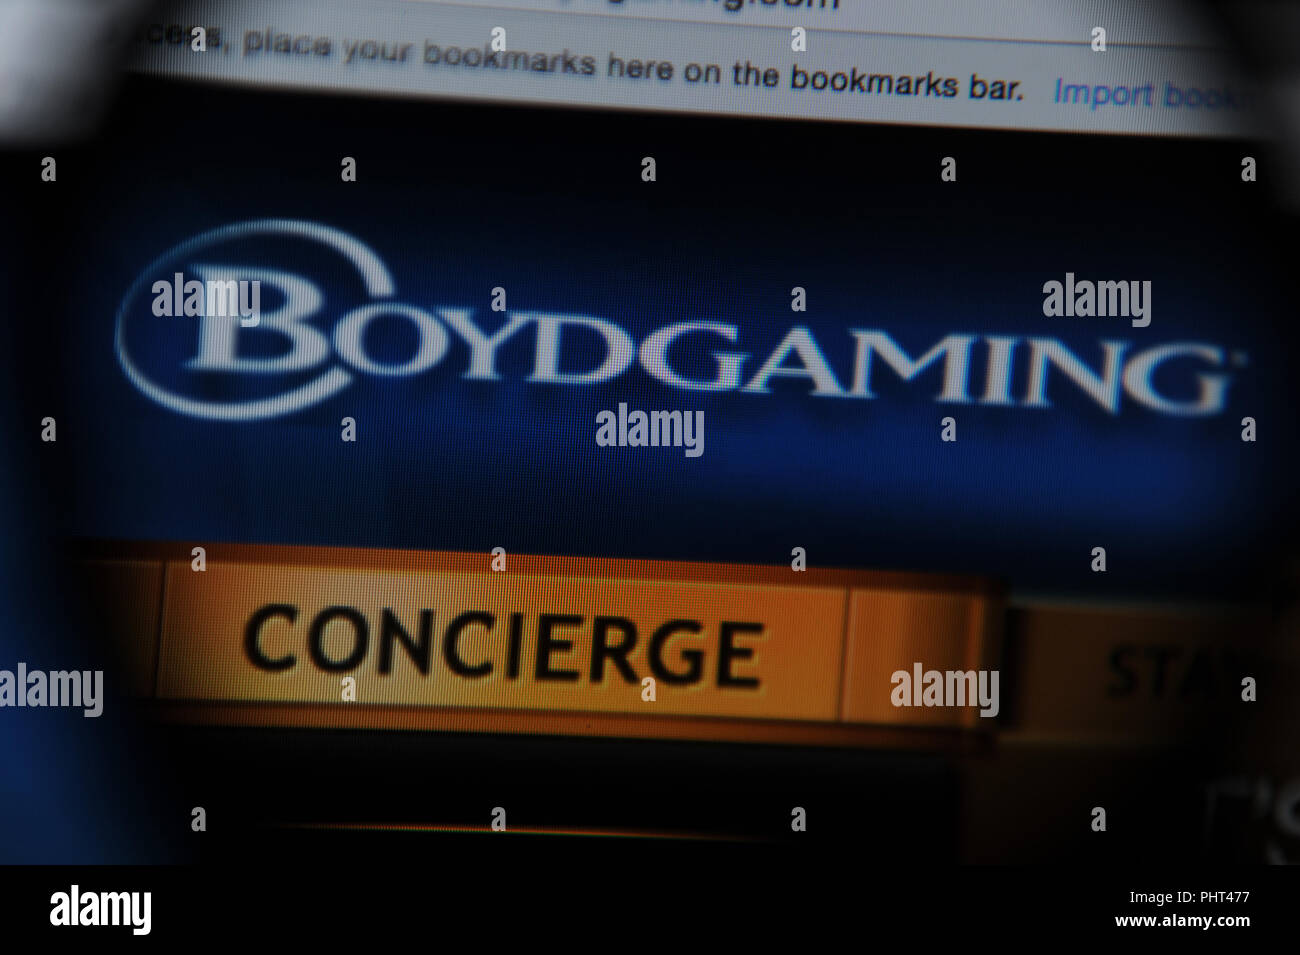 Boyd Gaming sito visto attraverso una lente di ingrandimento Foto Stock